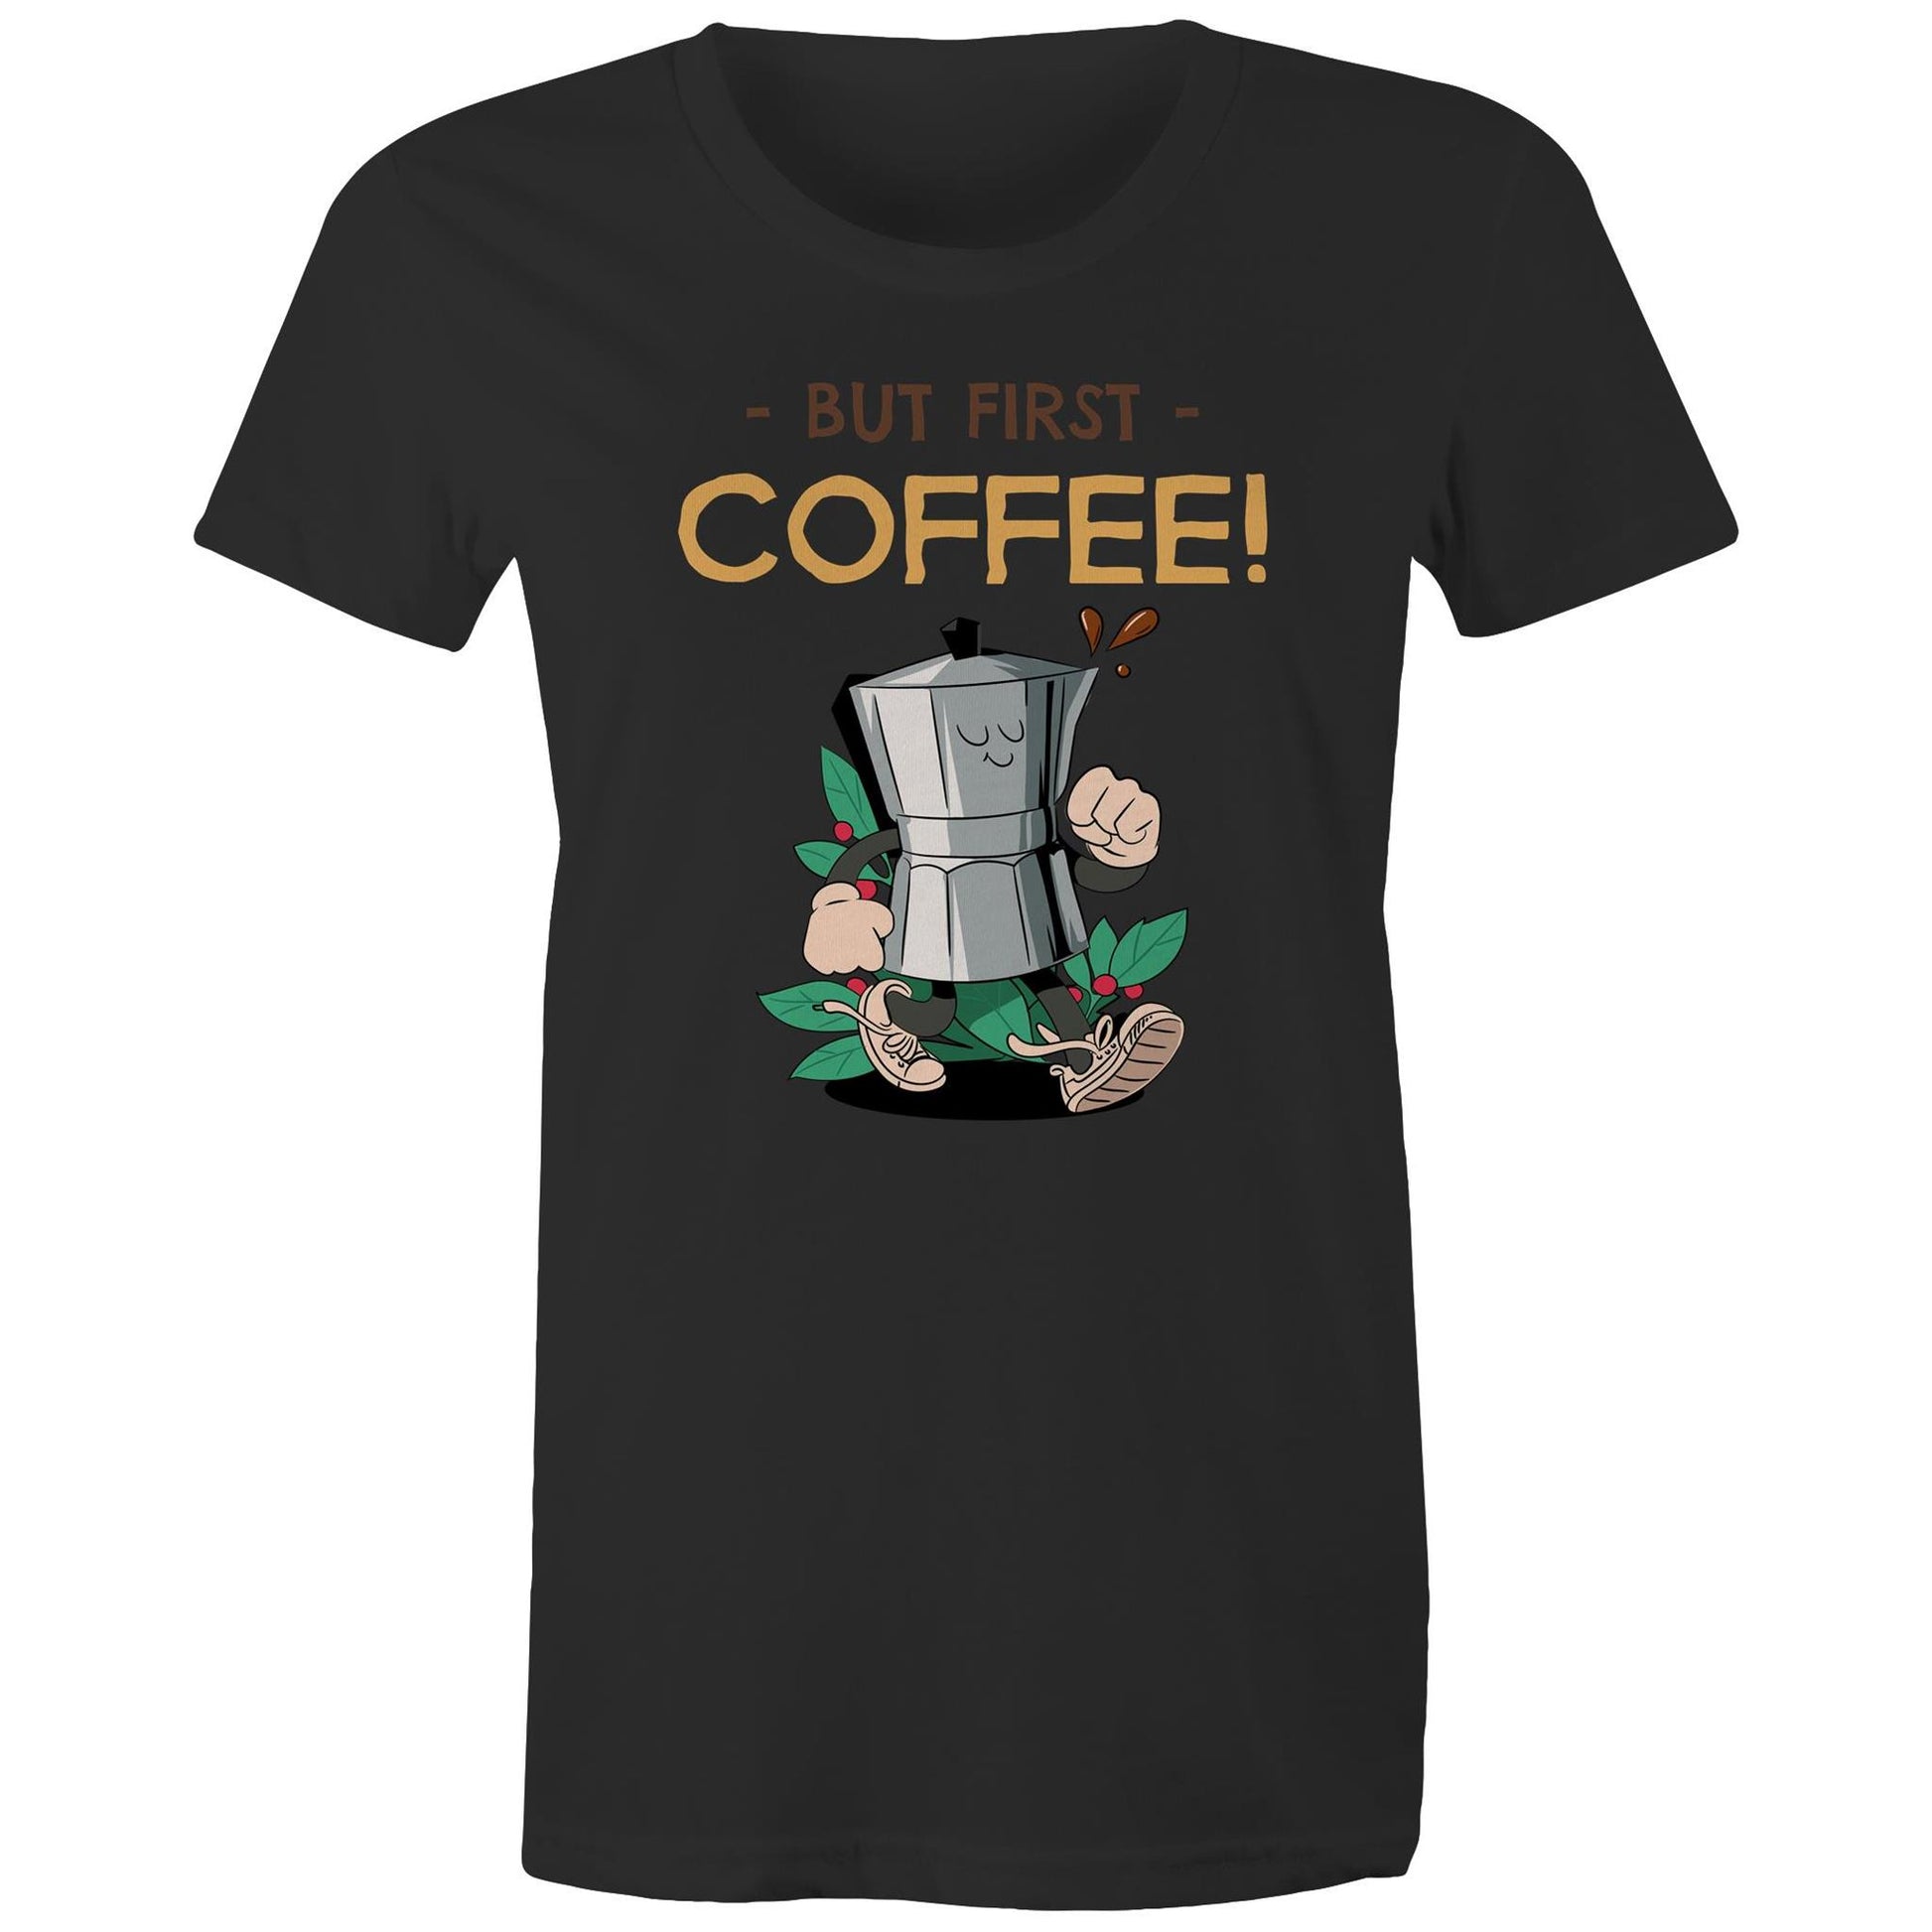 But First Coffee - Womens T-shirt Black Womens T-shirt Coffee Retro